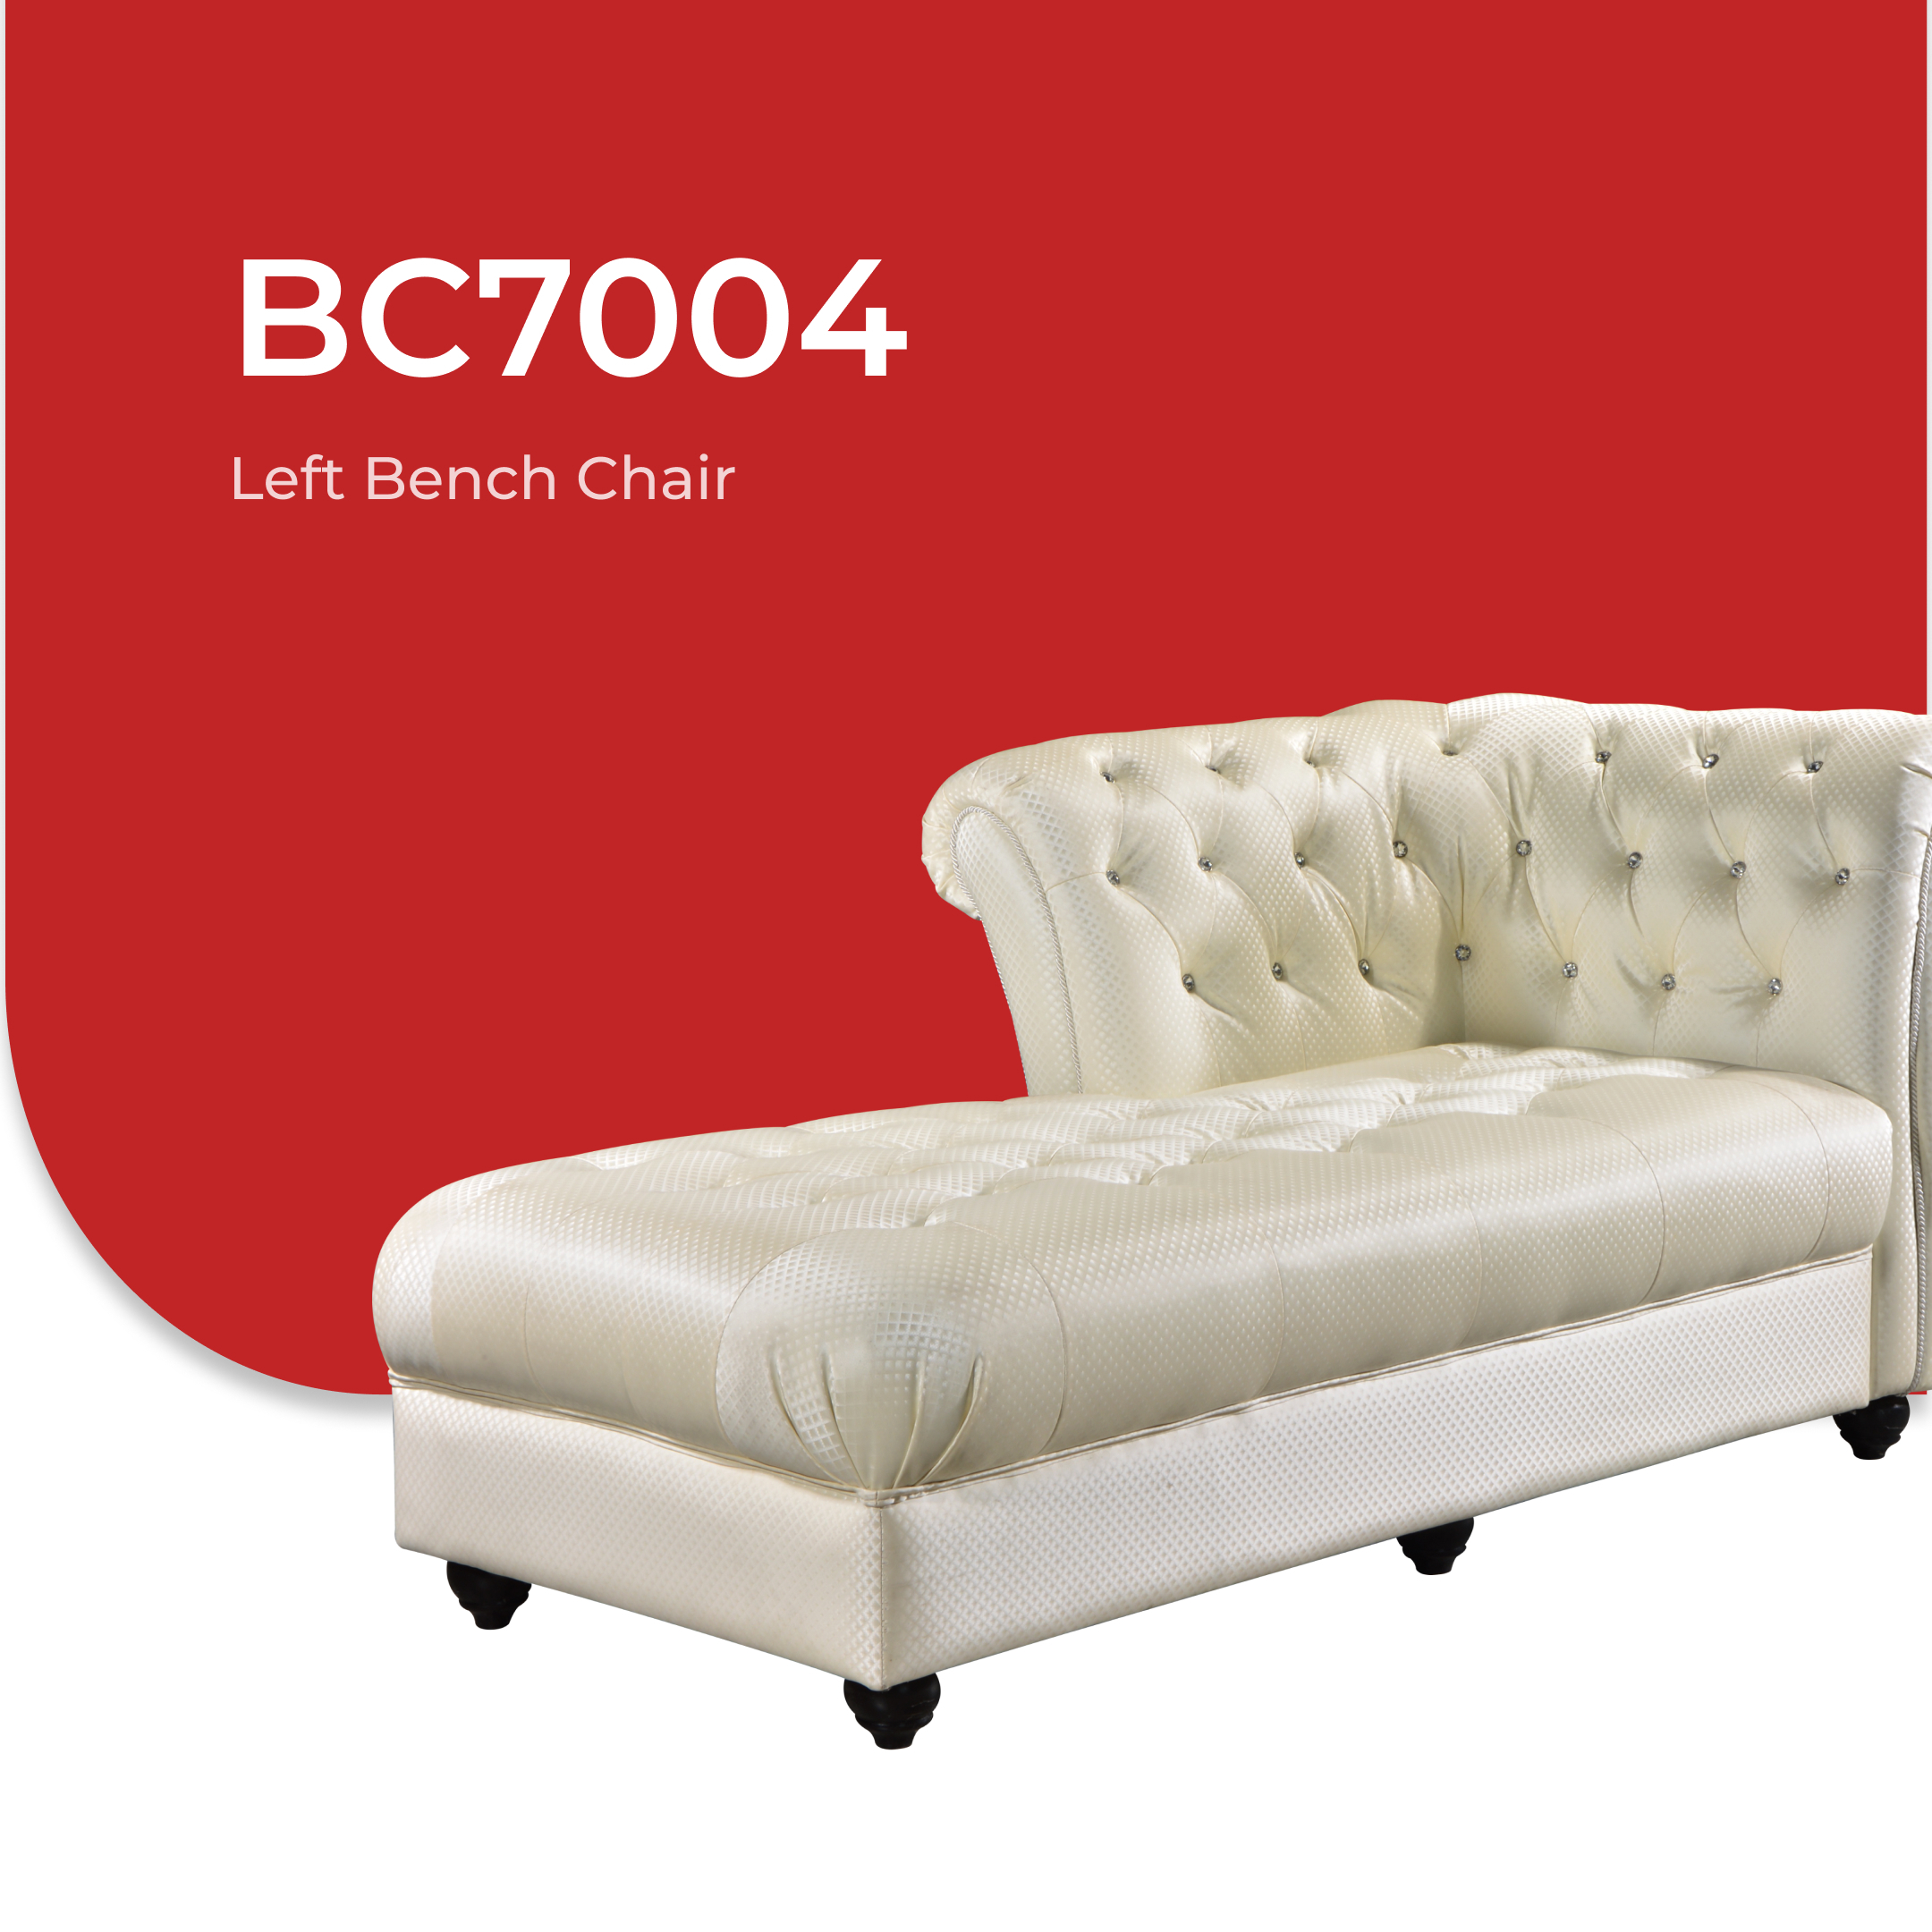 BC7004 5.jpg